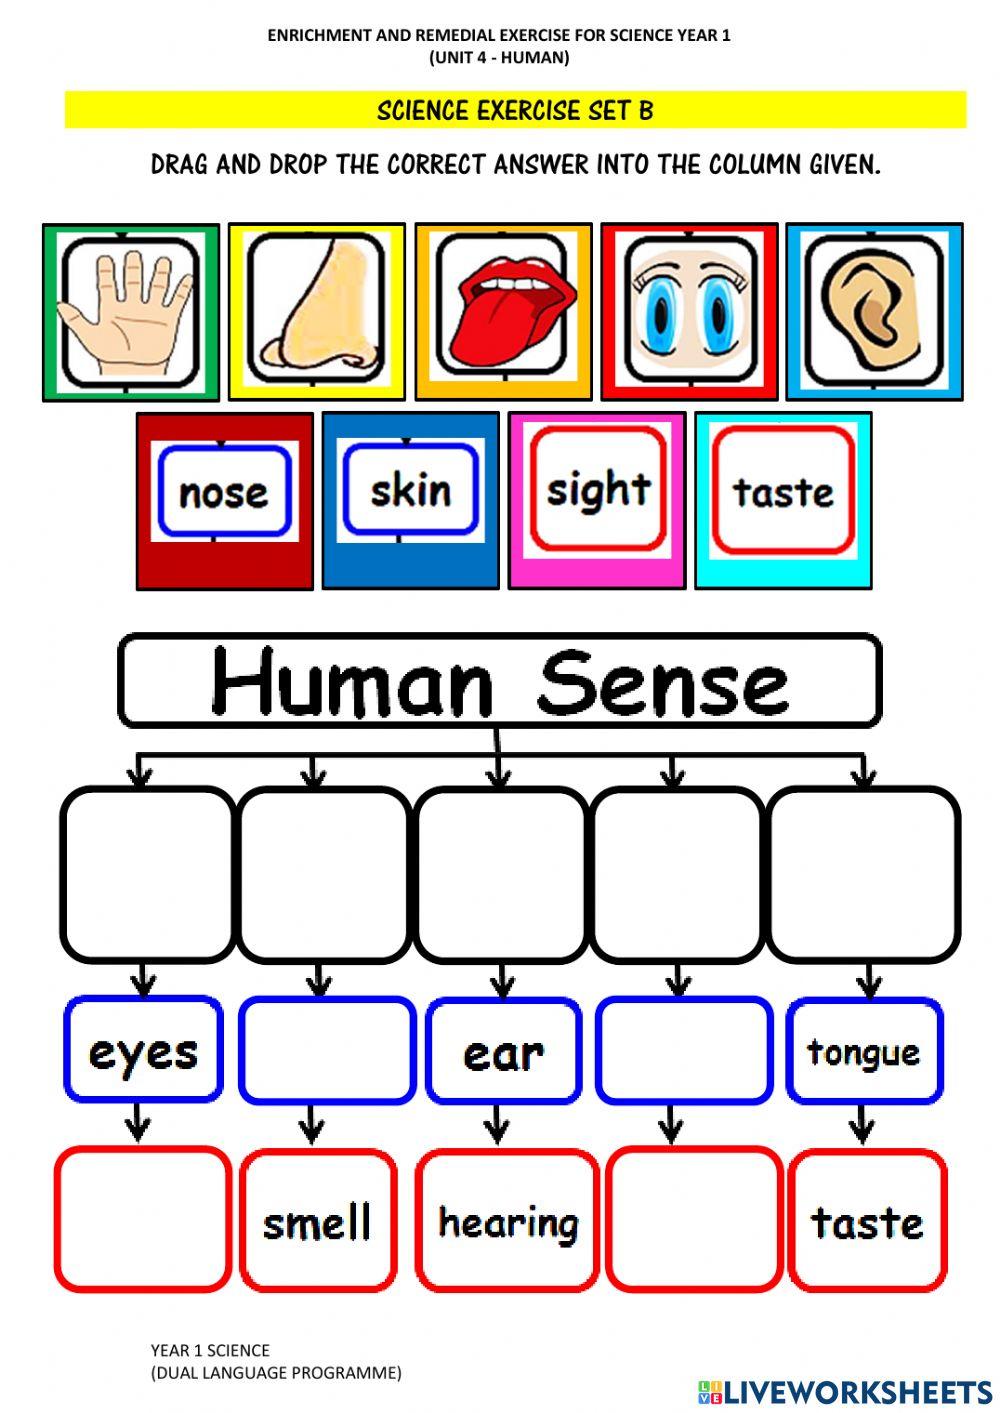 Human's Five Senses and Sensory Organ